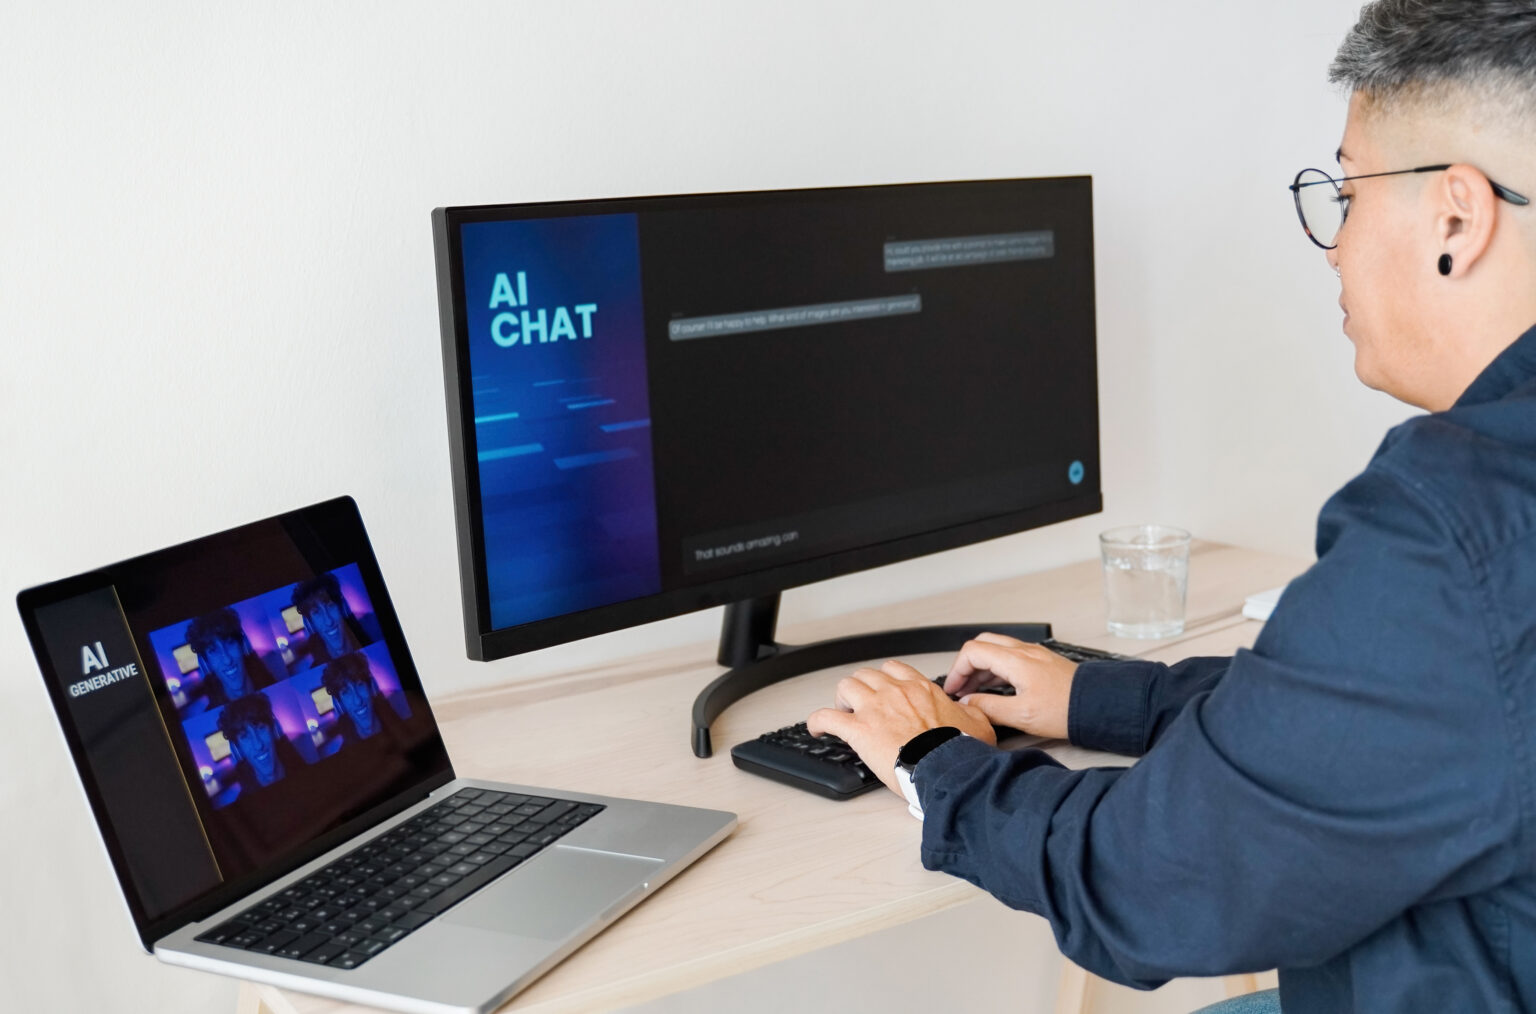 Mann mit blauem Hemd sitzt vor dem Bildschirm und schreibt auf der Tastatur. Daneben noch ein weiterer PC. Am Bildschirm AI Chat zu lesen